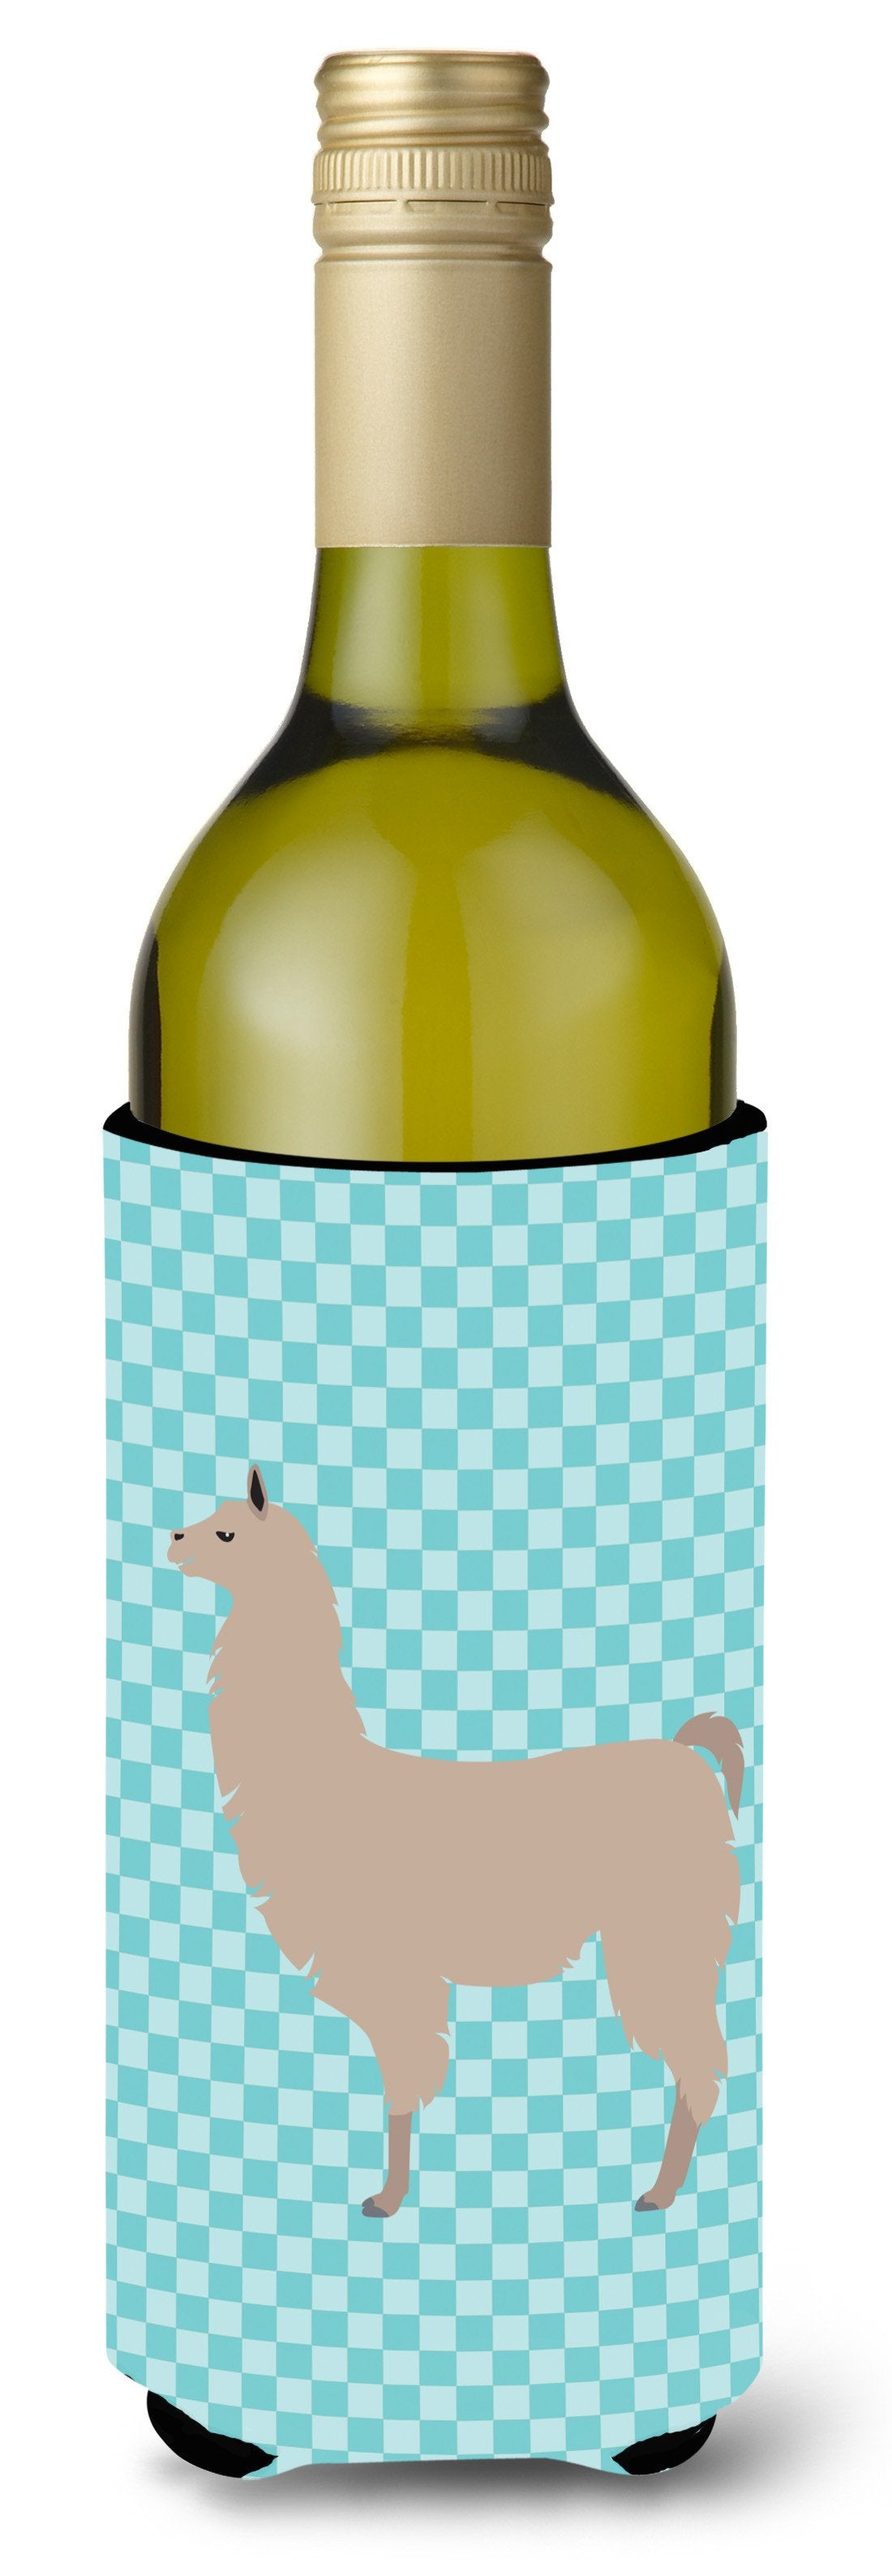 Llama Blue Check Wine Bottle Beverge Insulator Hugger BB8090LITERK by Caroline's Treasures